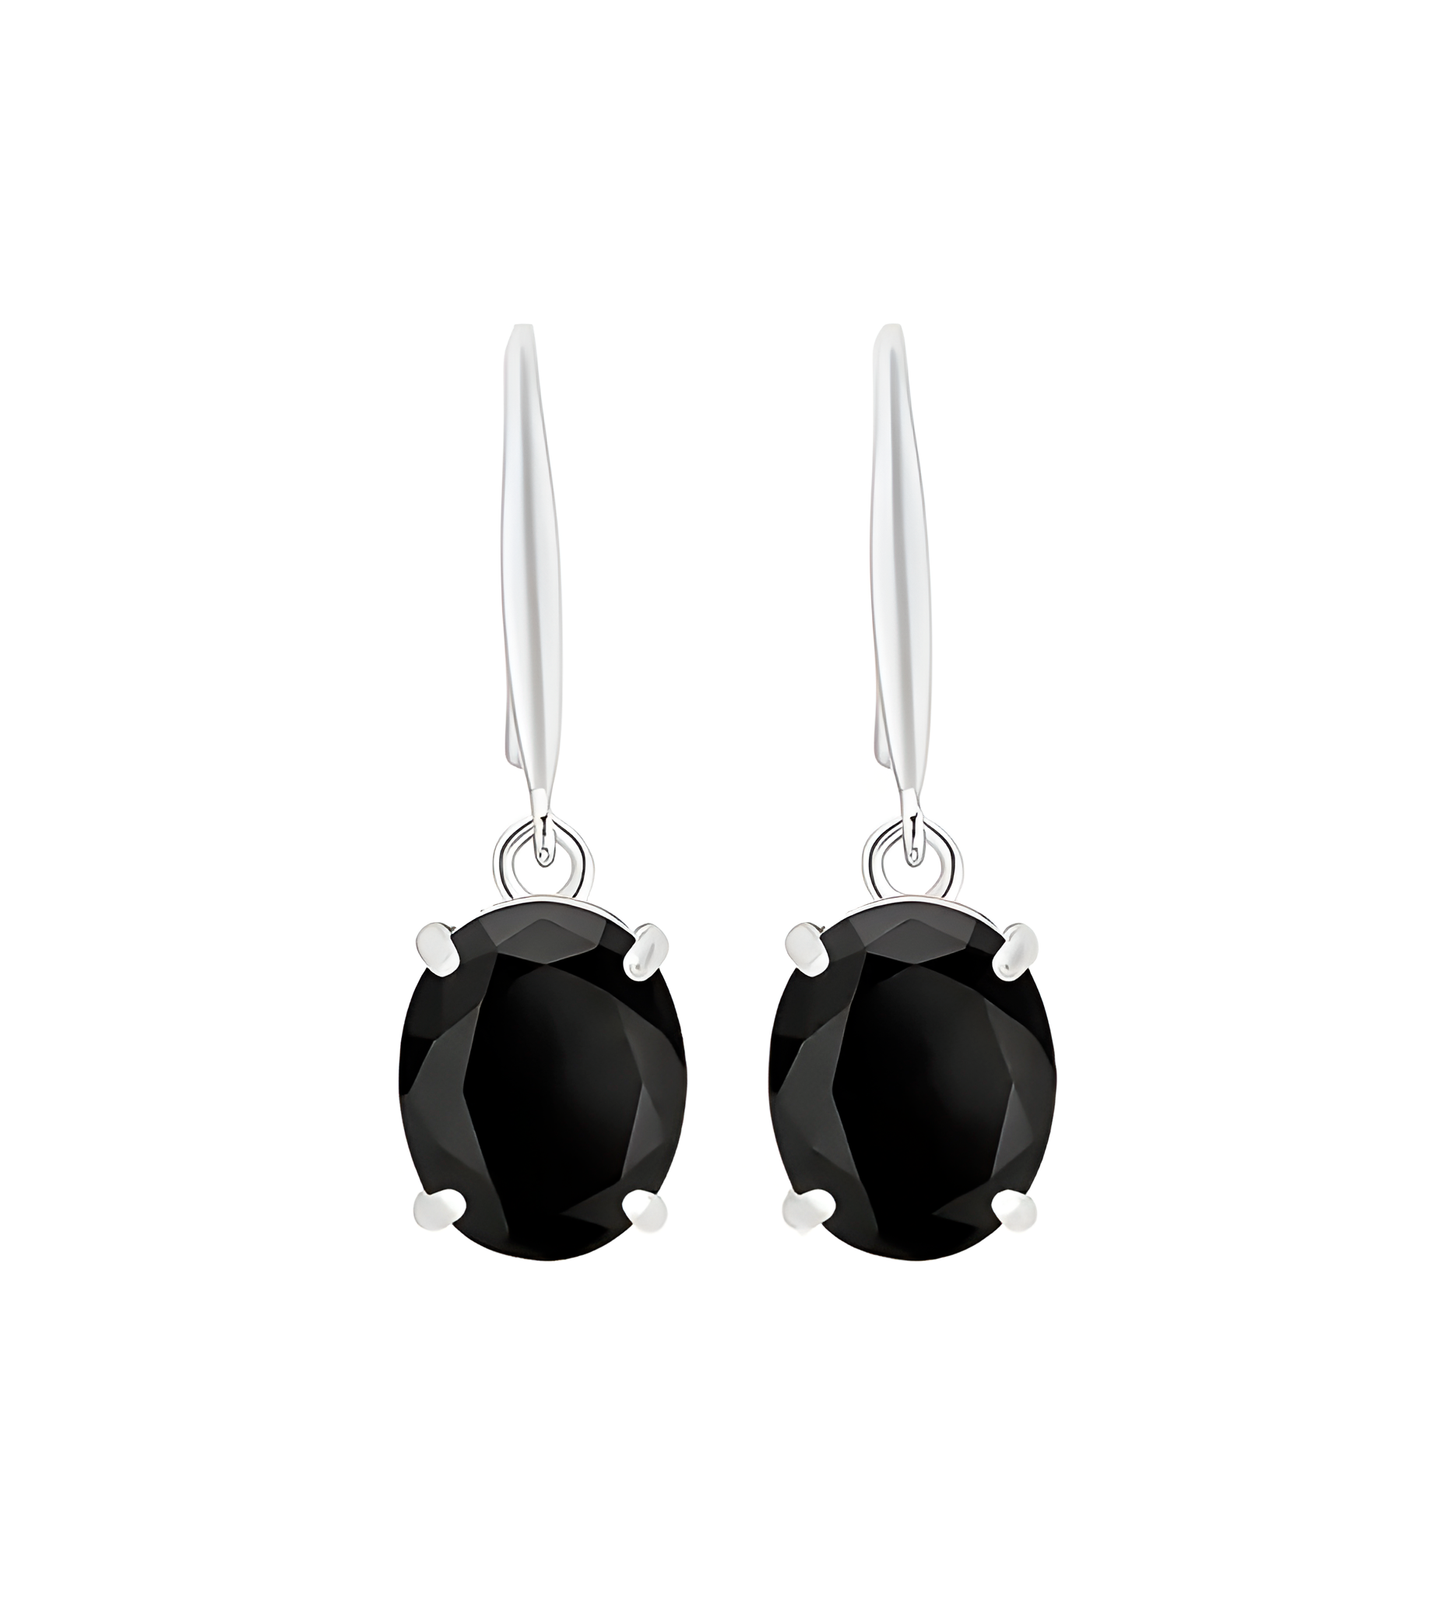 Oval Shiny Black Zircon Dangle Earrings Simple Style 925 Sterling Silver Hypoallergenic